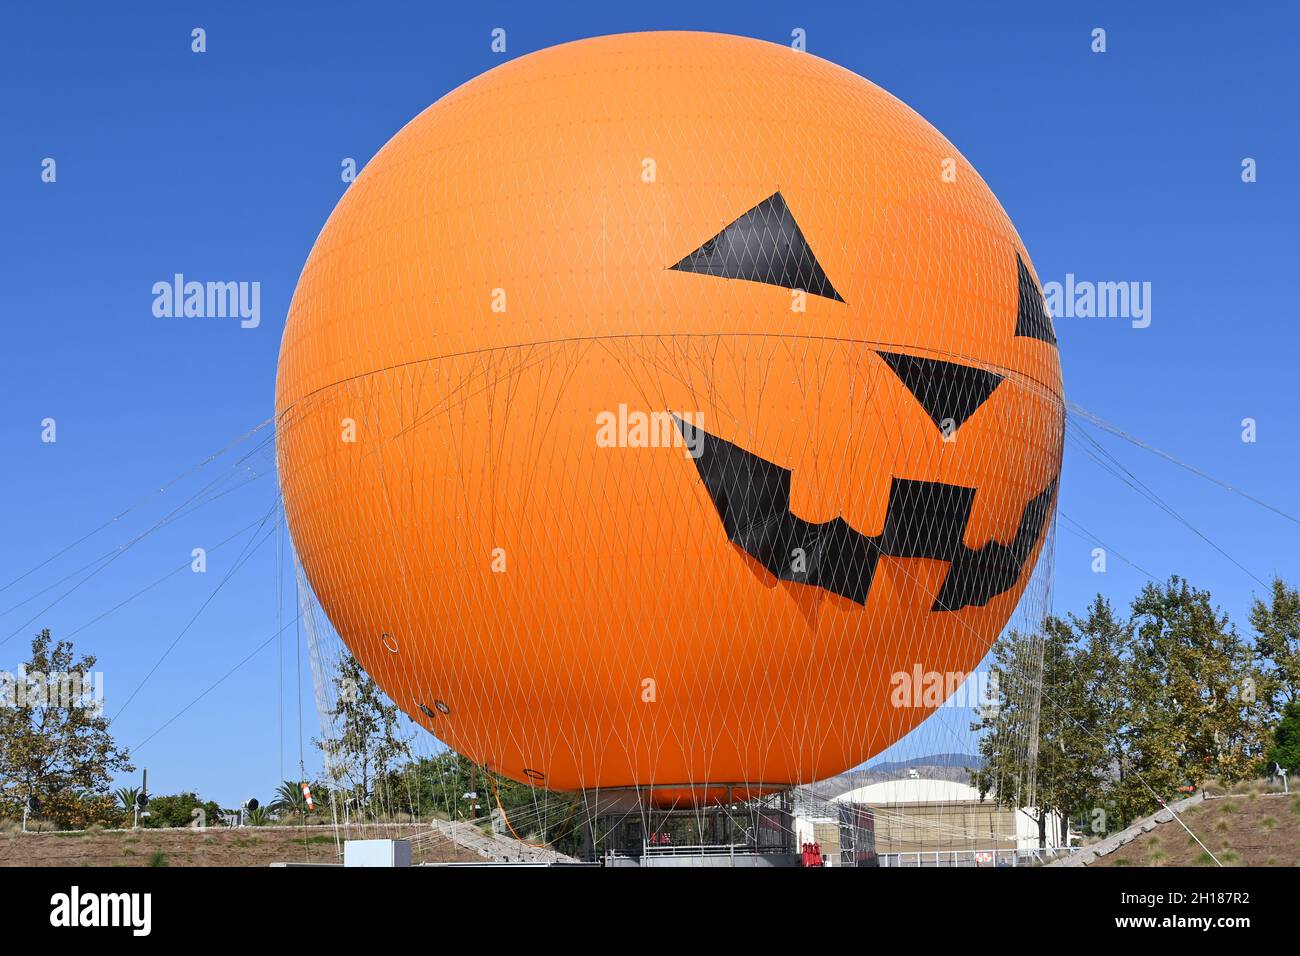 IRVINE, KALIFORNIEN - 15 Okt 2021: Die Great Park Balloon Ride, vom Palm Court aus gesehen und für Halloween dekoriert, ist eine der größten Heliumkugel Stockfoto